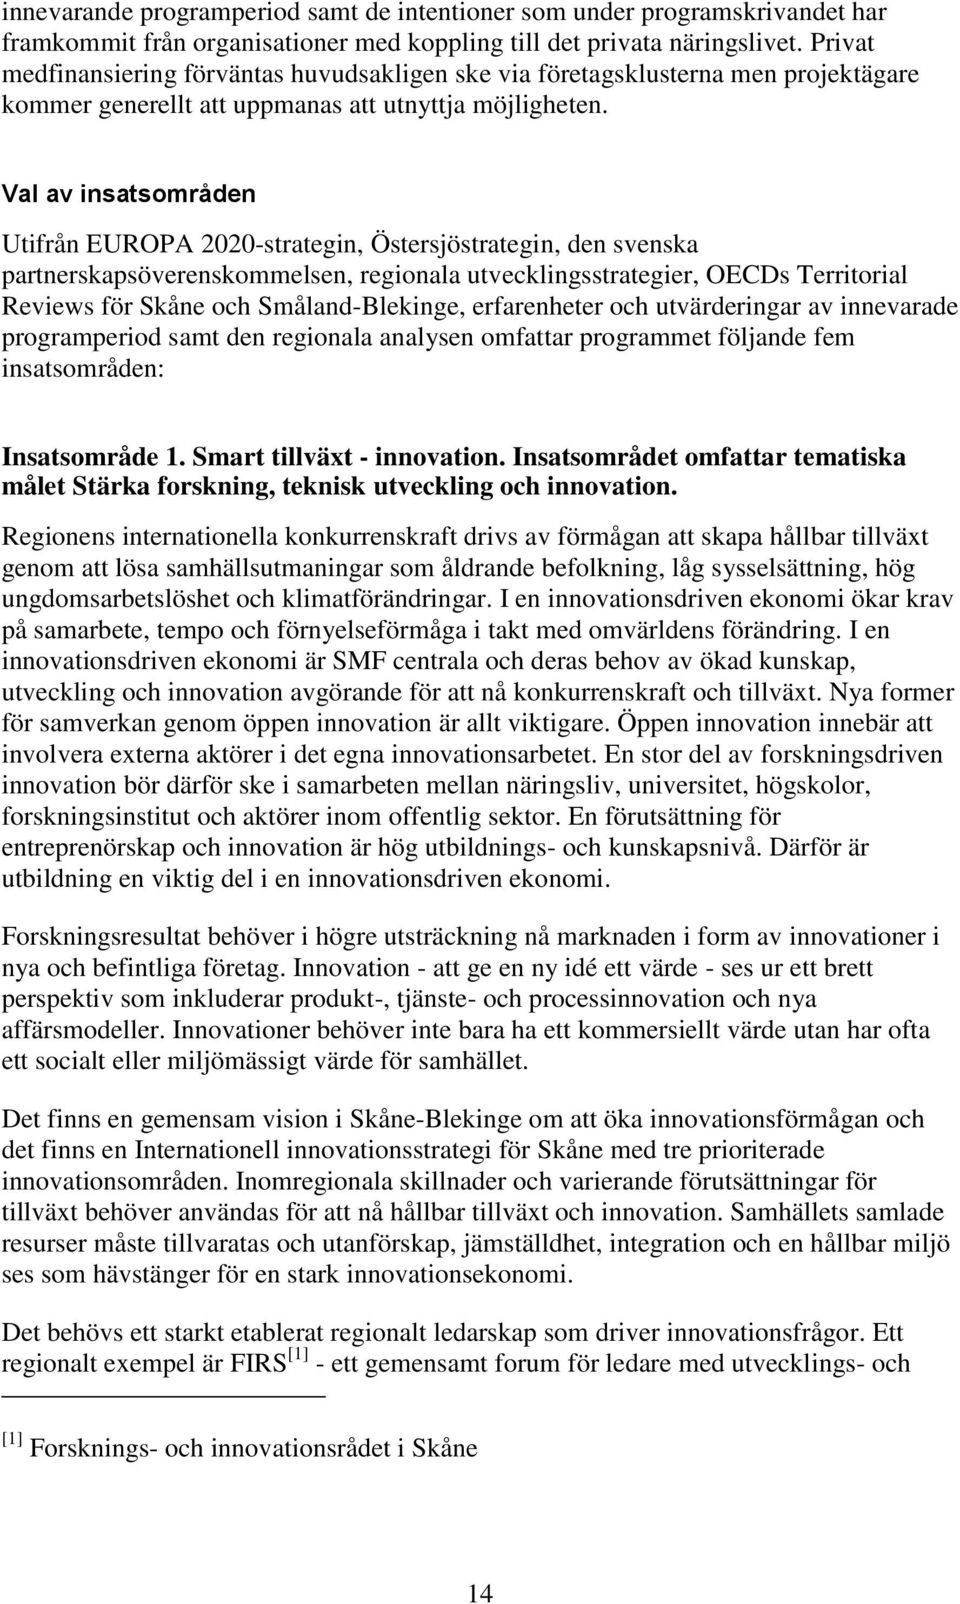 Val av insatsområden Utifrån EUROPA 2020-strategin, Östersjöstrategin, den svenska partnerskapsöverenskommelsen, regionala utvecklingsstrategier, OECDs Territorial Reviews för Skåne och